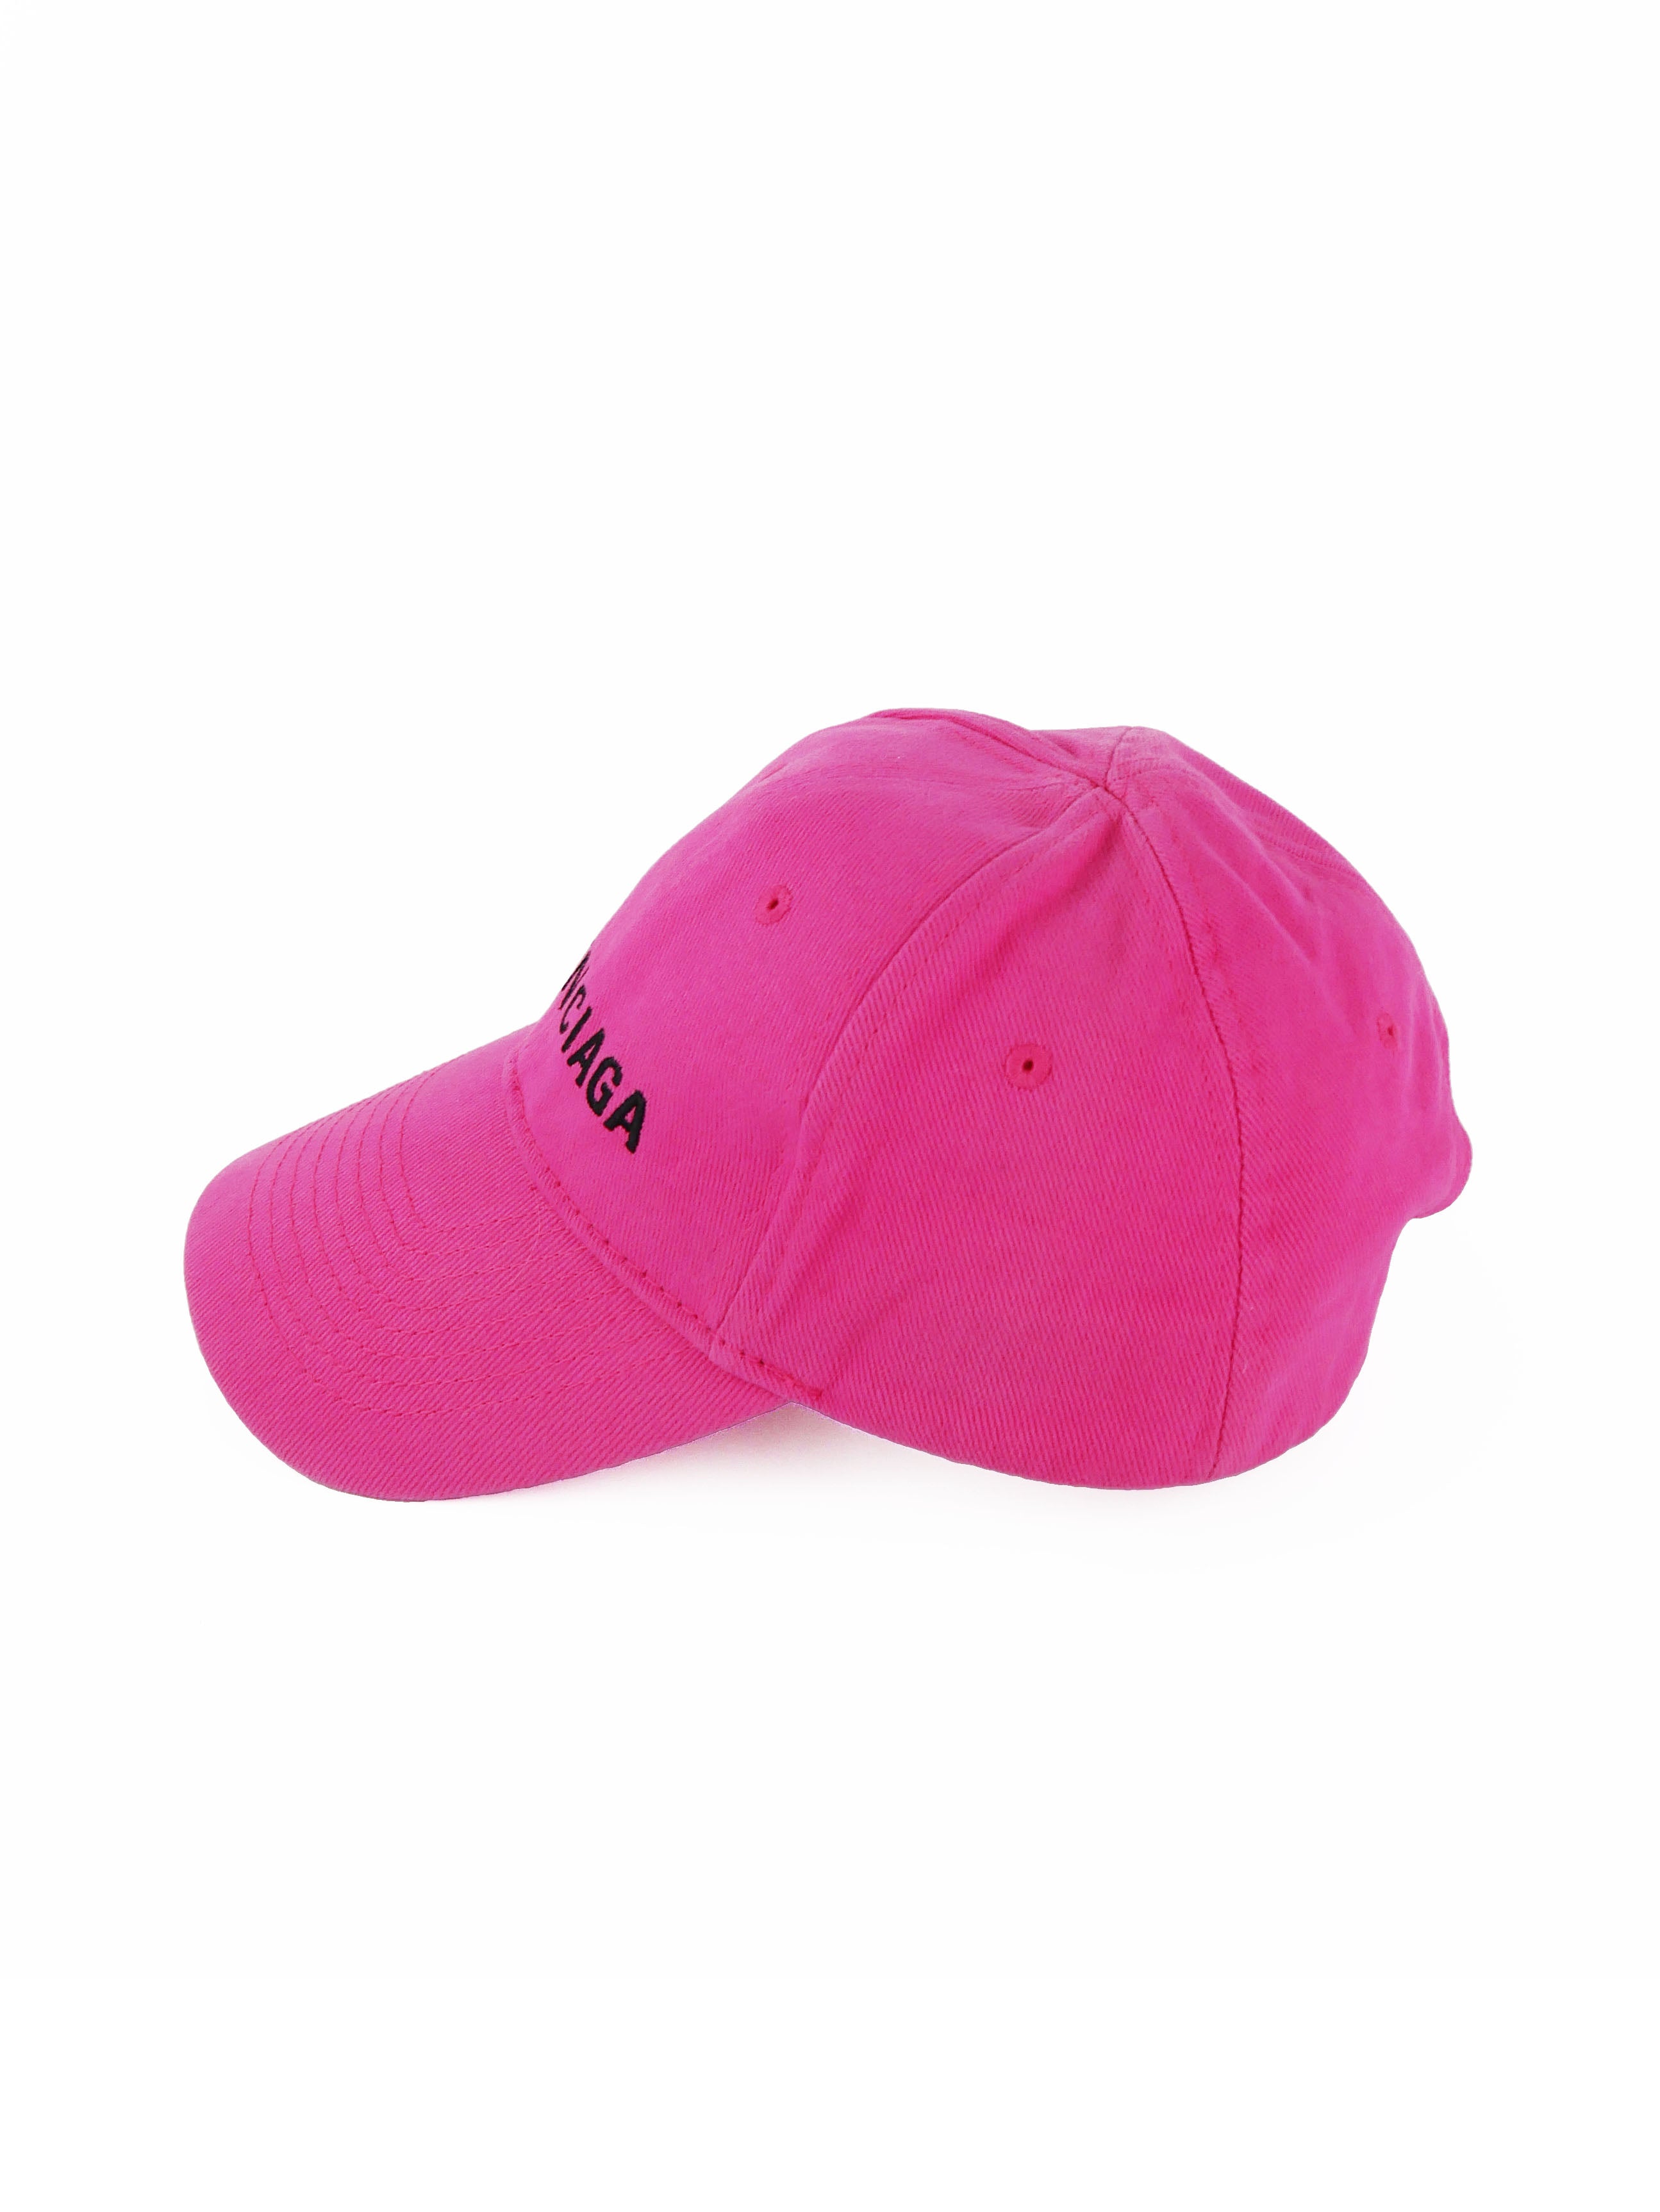 balenciaga-pink-cap-2.jpg